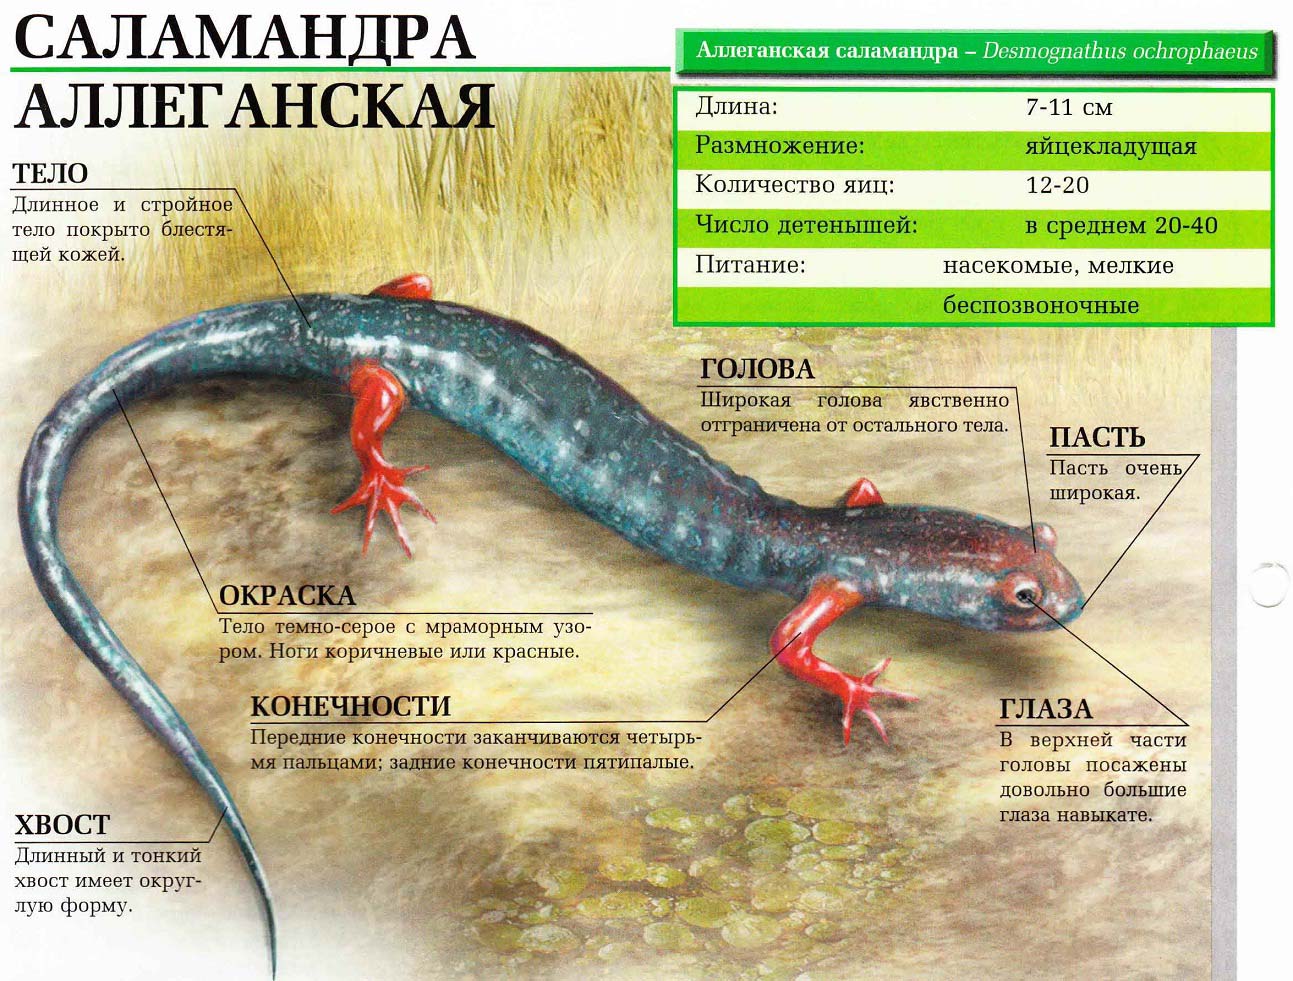 Описание аллеганской саламандры.